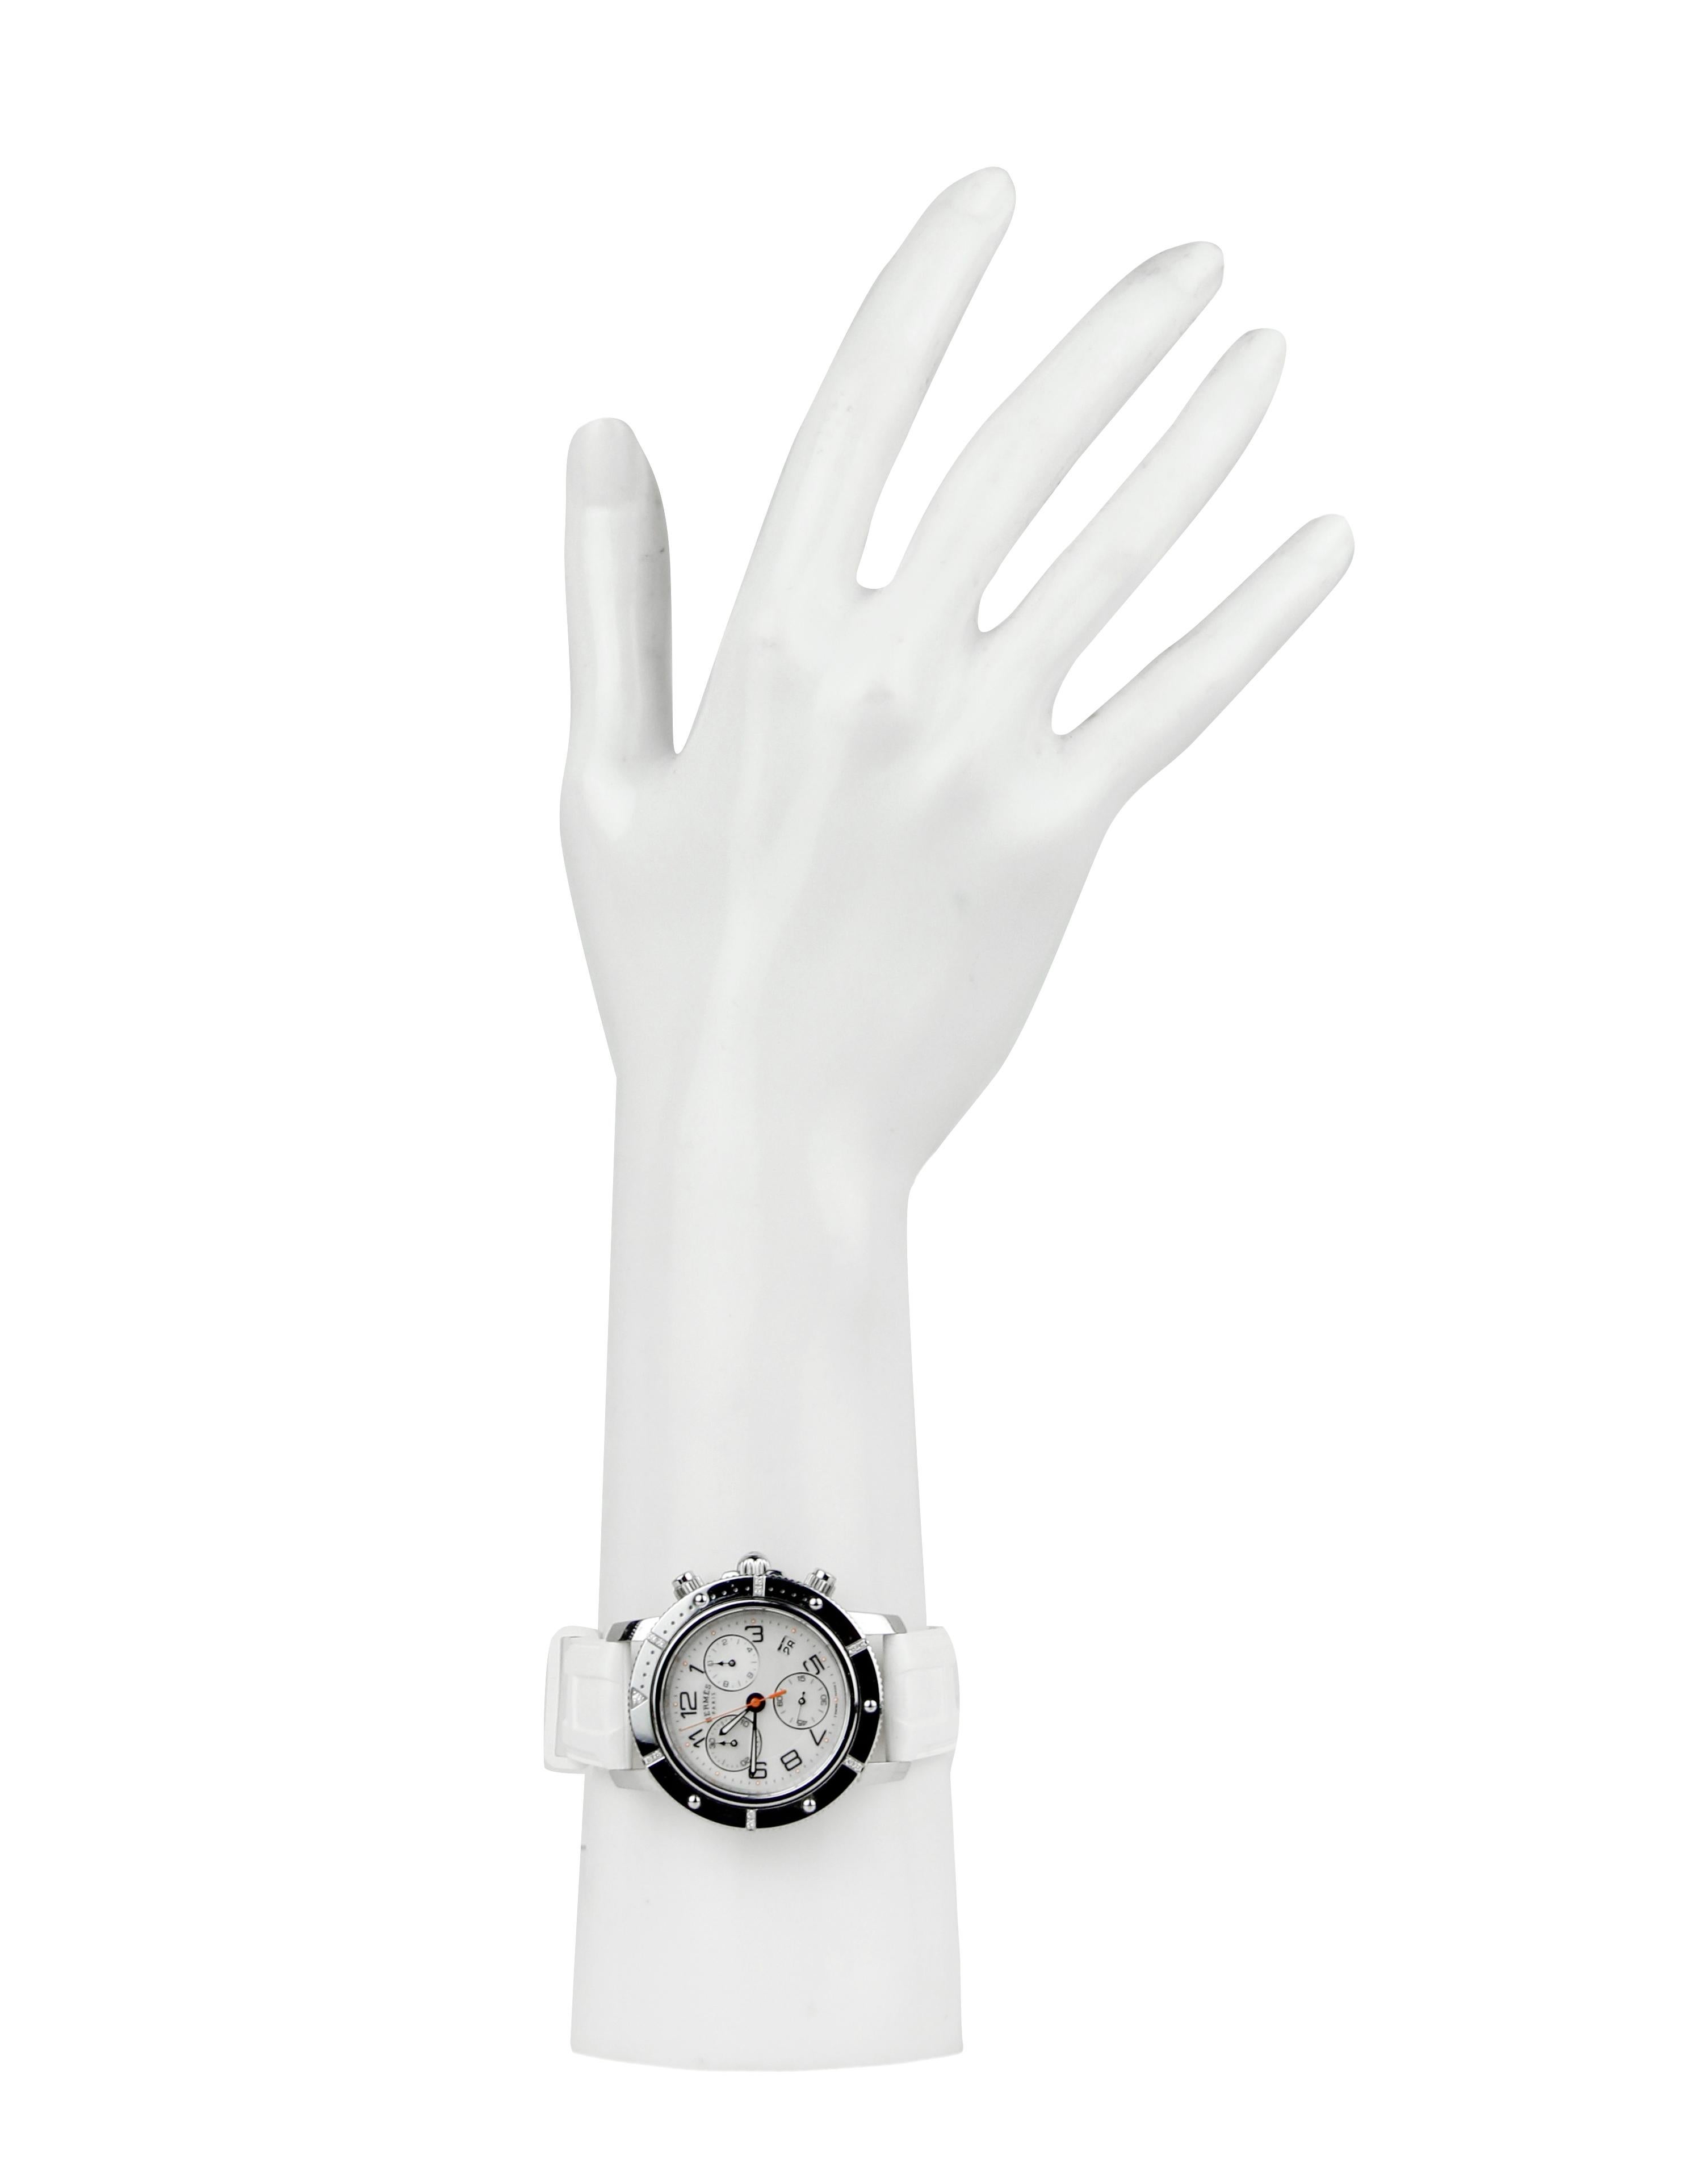 Hermes Cronograph Quartz Clipper Watch w/ Diamonds & White Rubber Band. Cadran en nacre avec index en chiffres arabes

Fabriqué en : Suisse
Couleur : argent, blanc
MATERIAL : Acier inoxydable, caoutchouc, diamants, nacre.
Fermeture/ouverture :